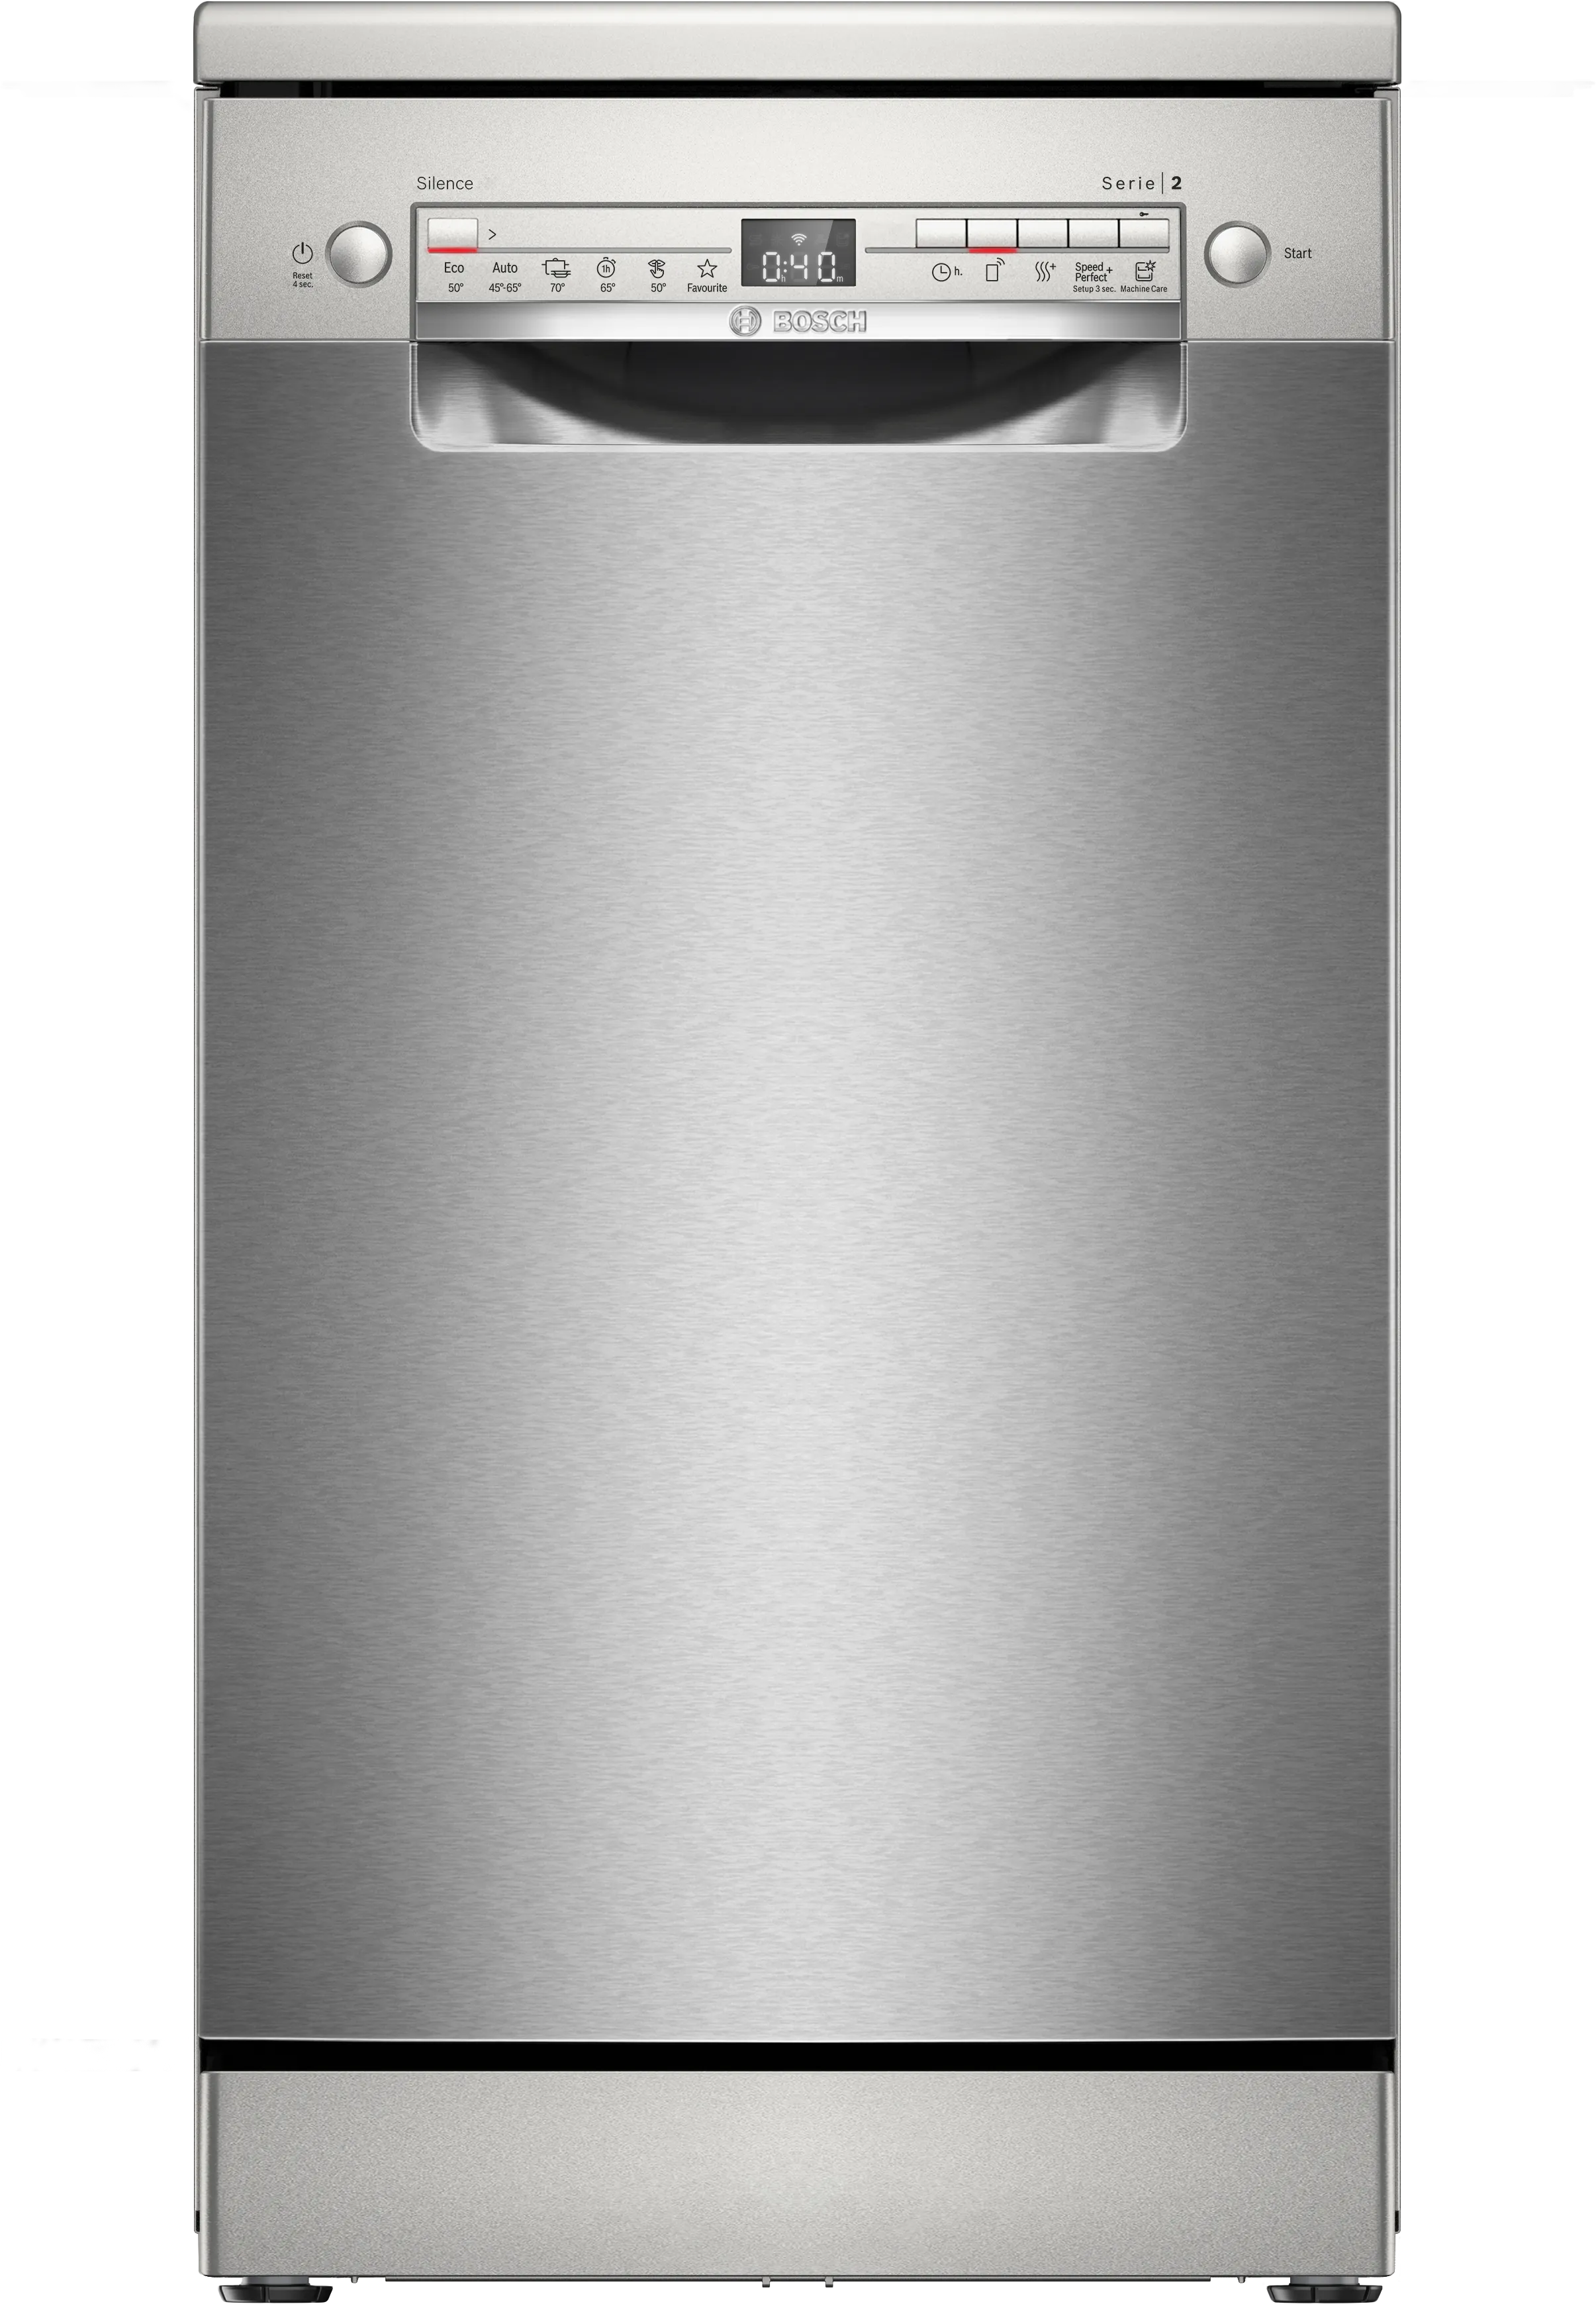 Sērija 2 Brīvstāvoša trauku mazgājamā mašīna 45 cm Šlifuotas plienas, atsparus pirštų atspaudams 